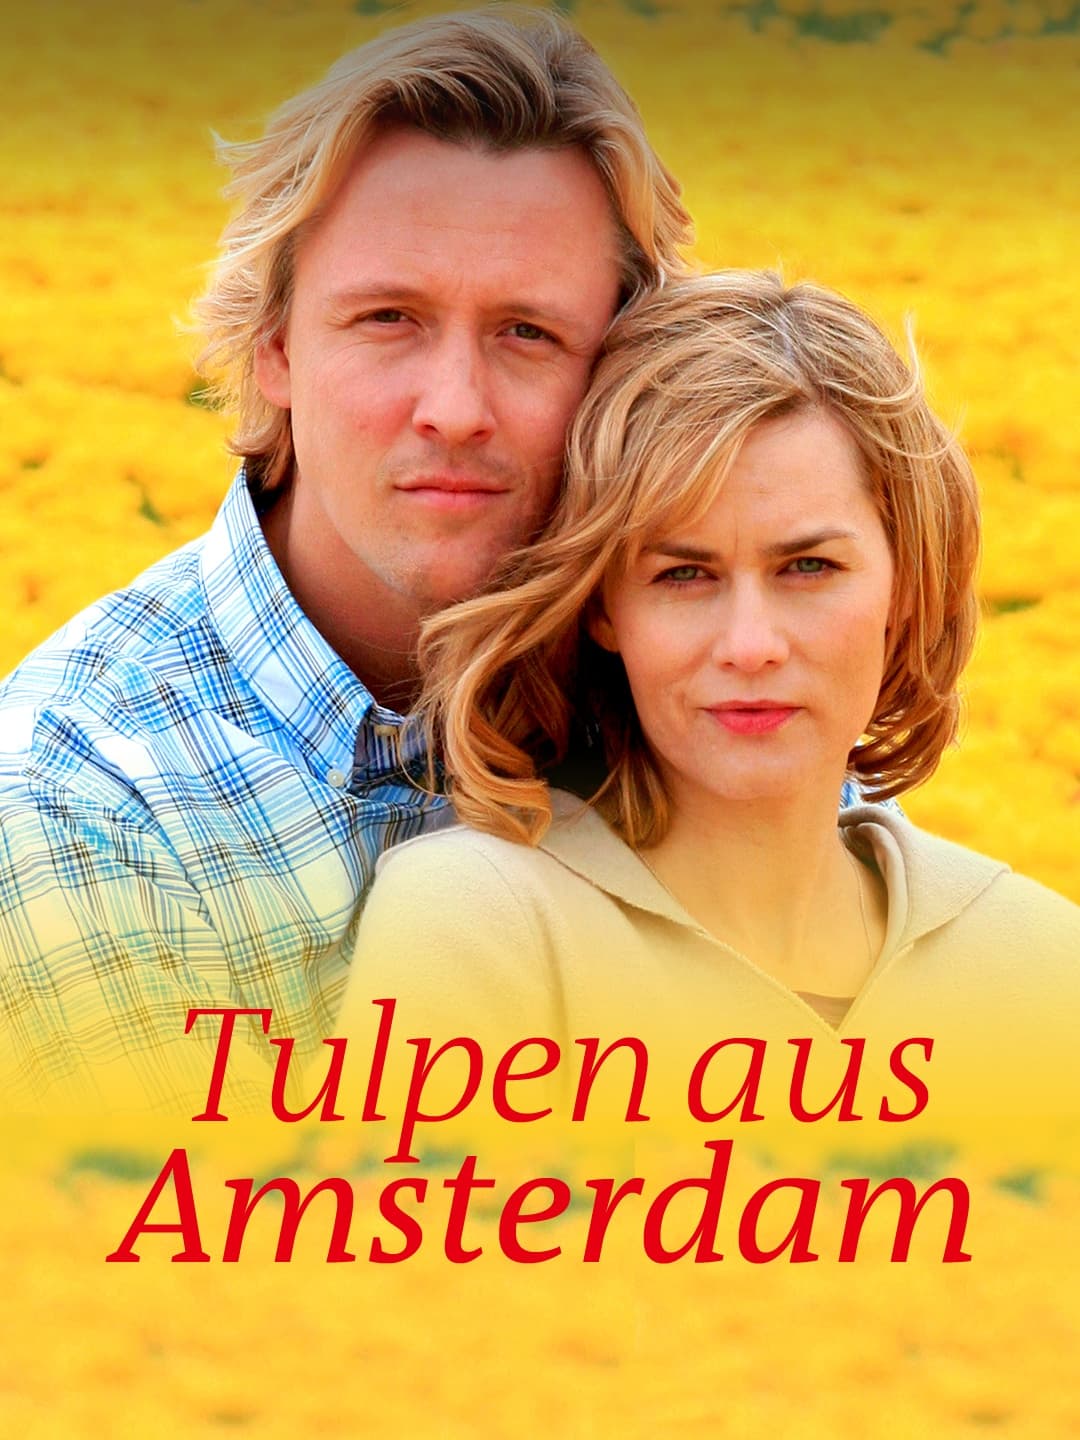 Tulpen aus Amsterdam (2010)